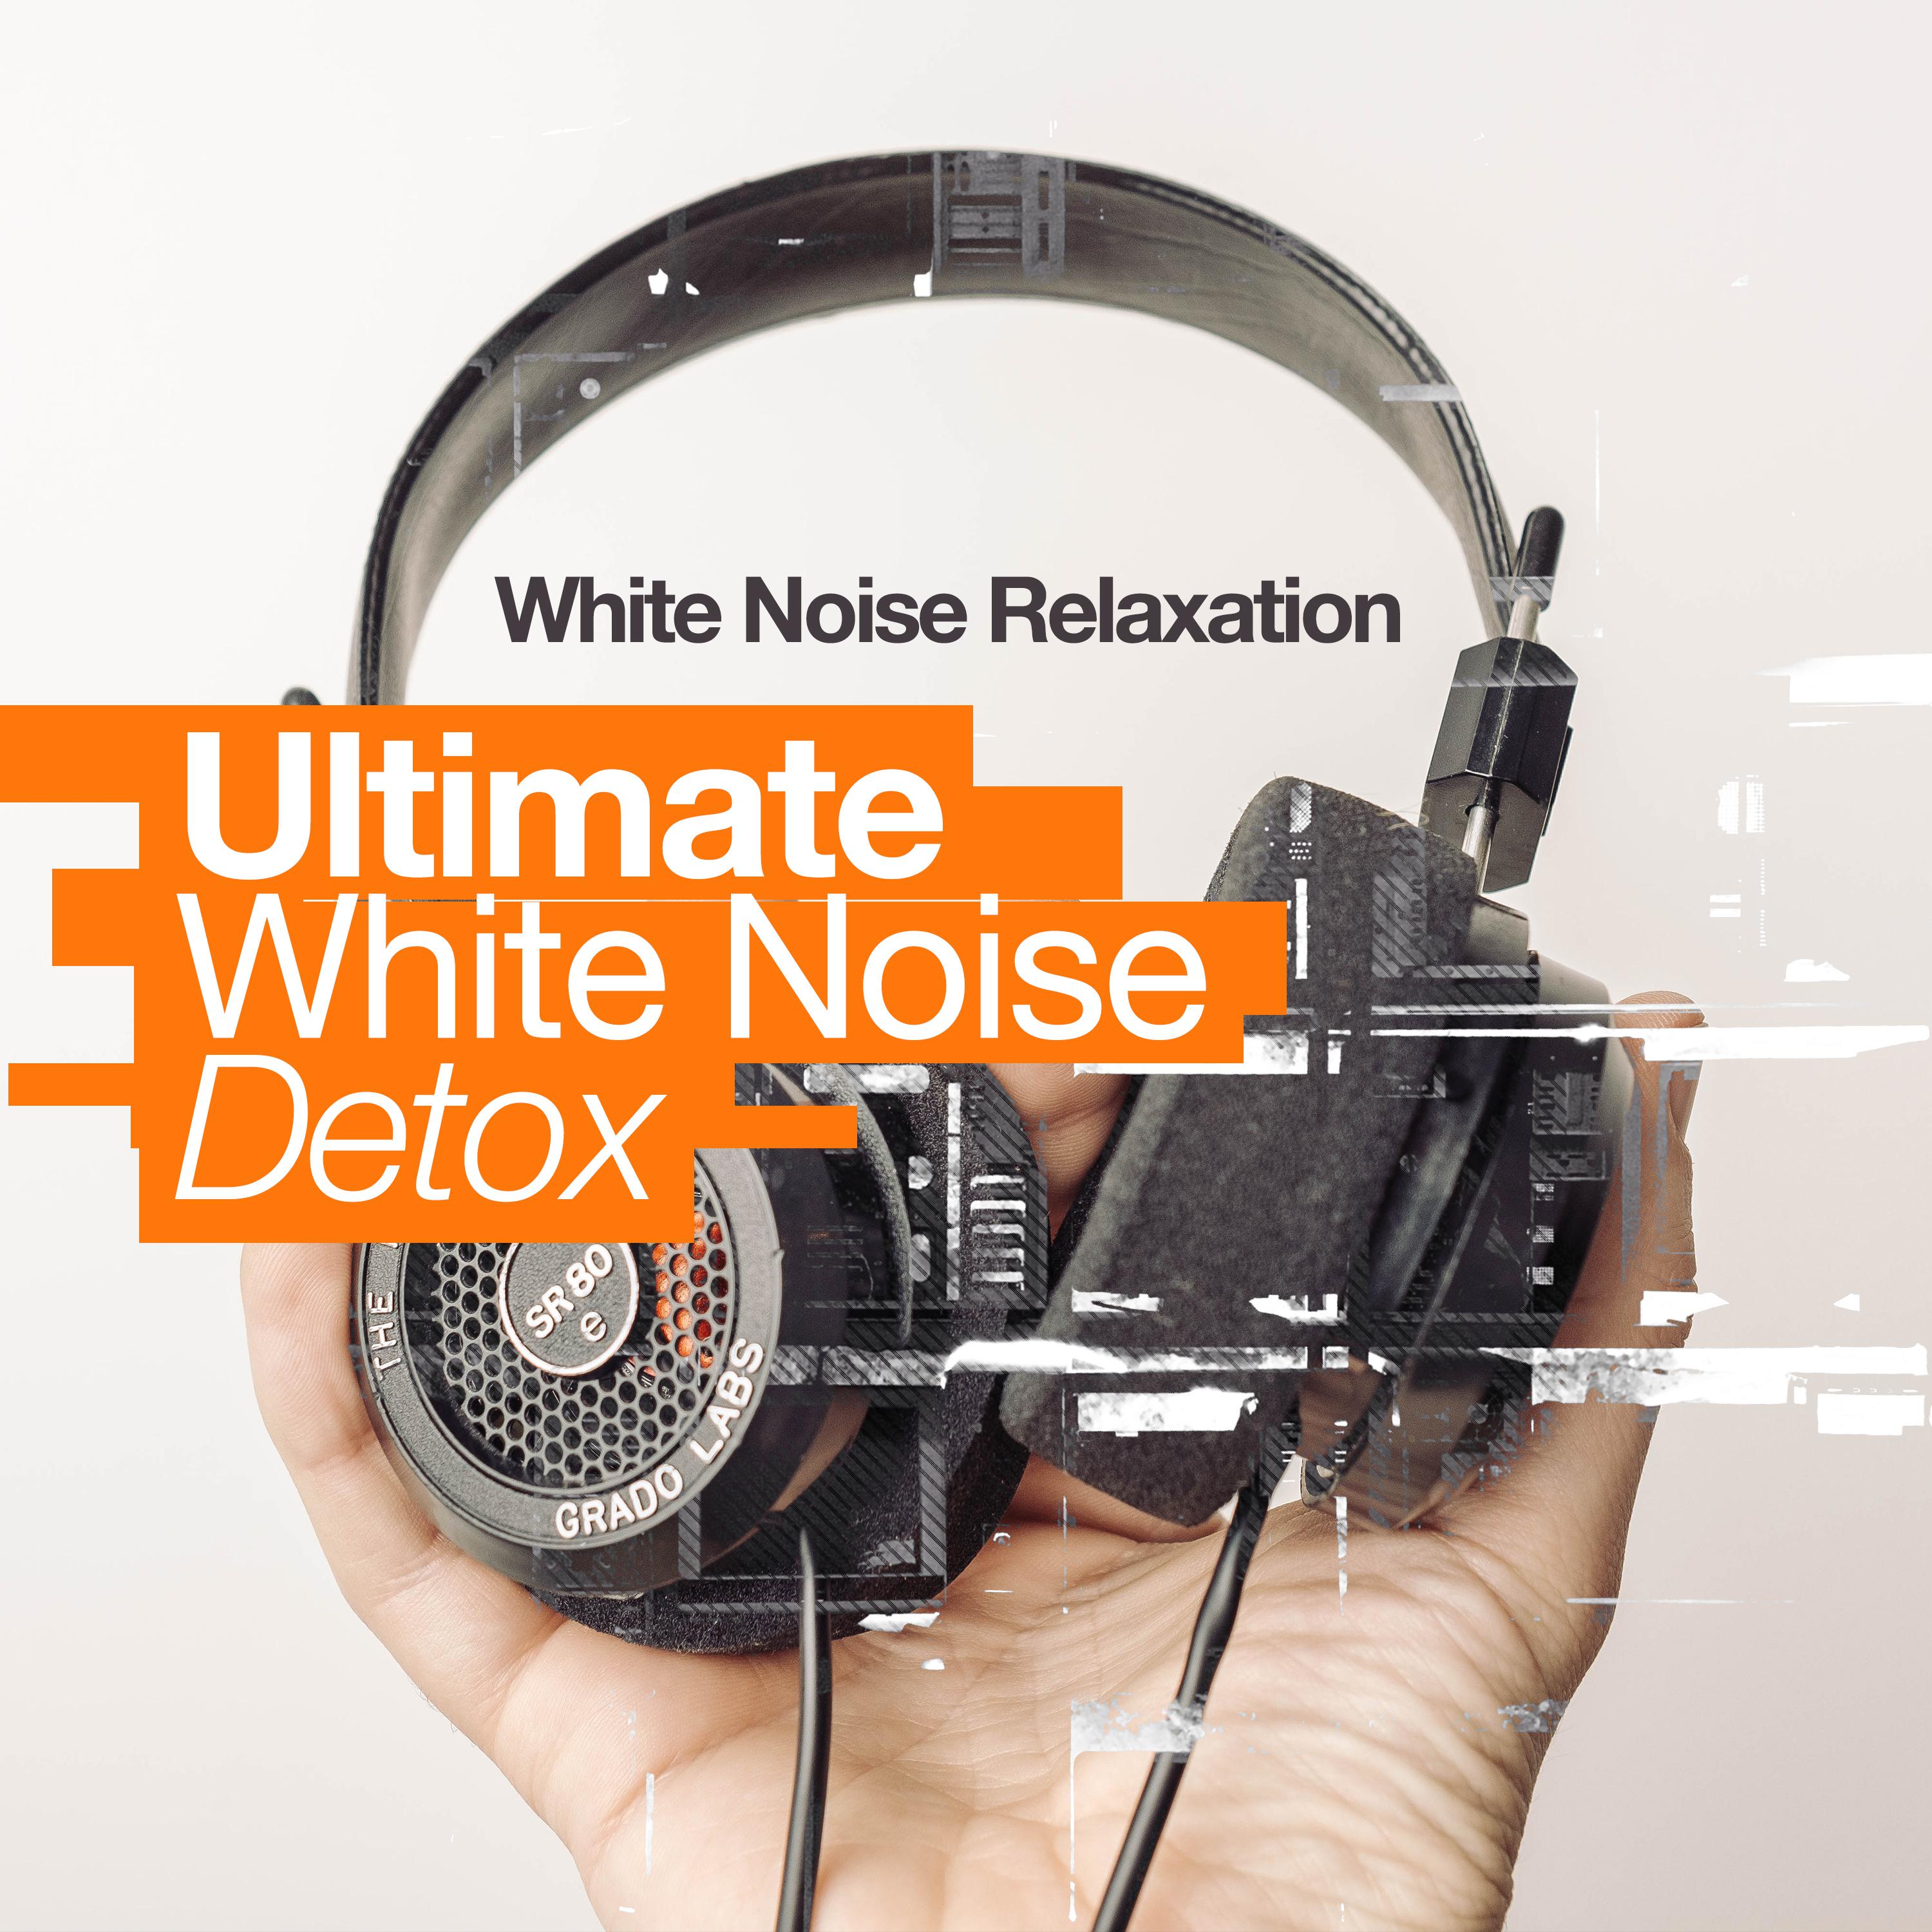 Ultimate White Noise Detox